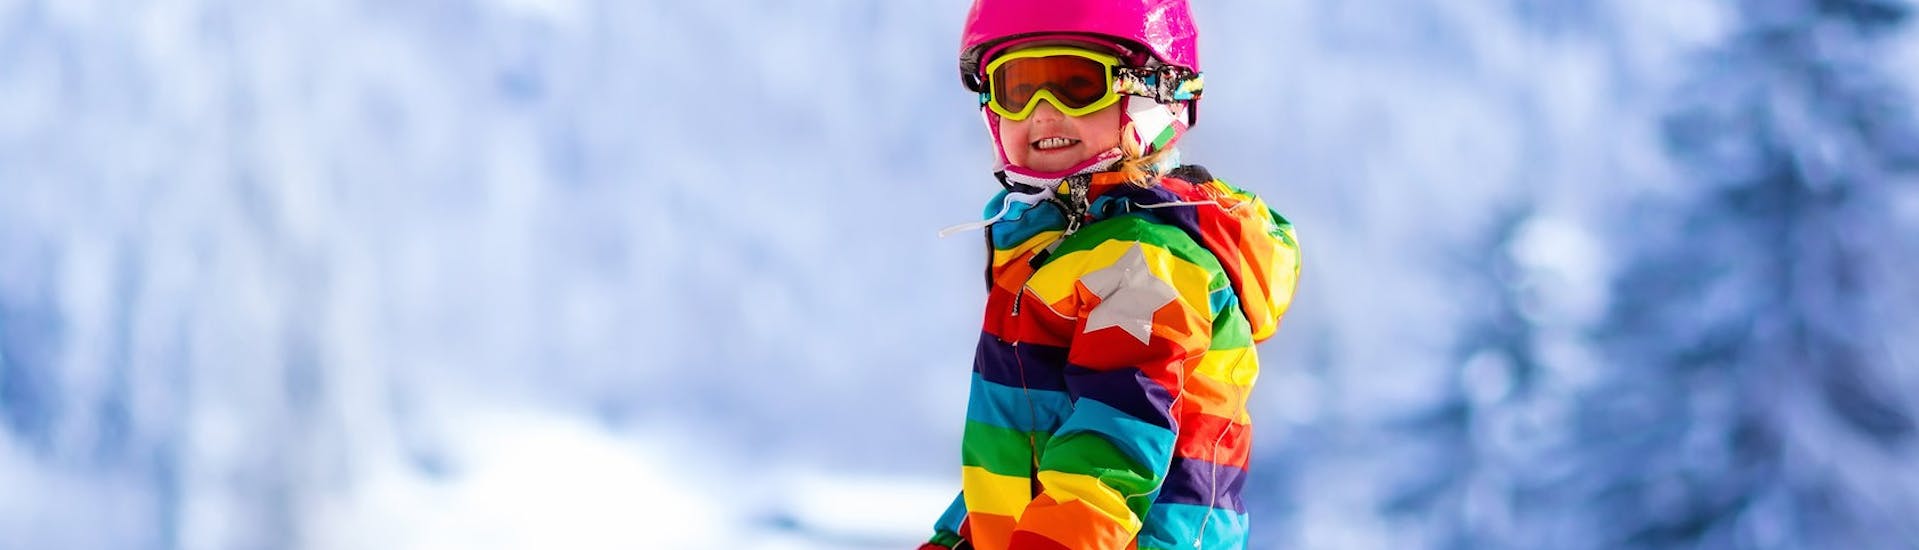 Skilessen voor kinderen vanaf 6 jaar - beginners.